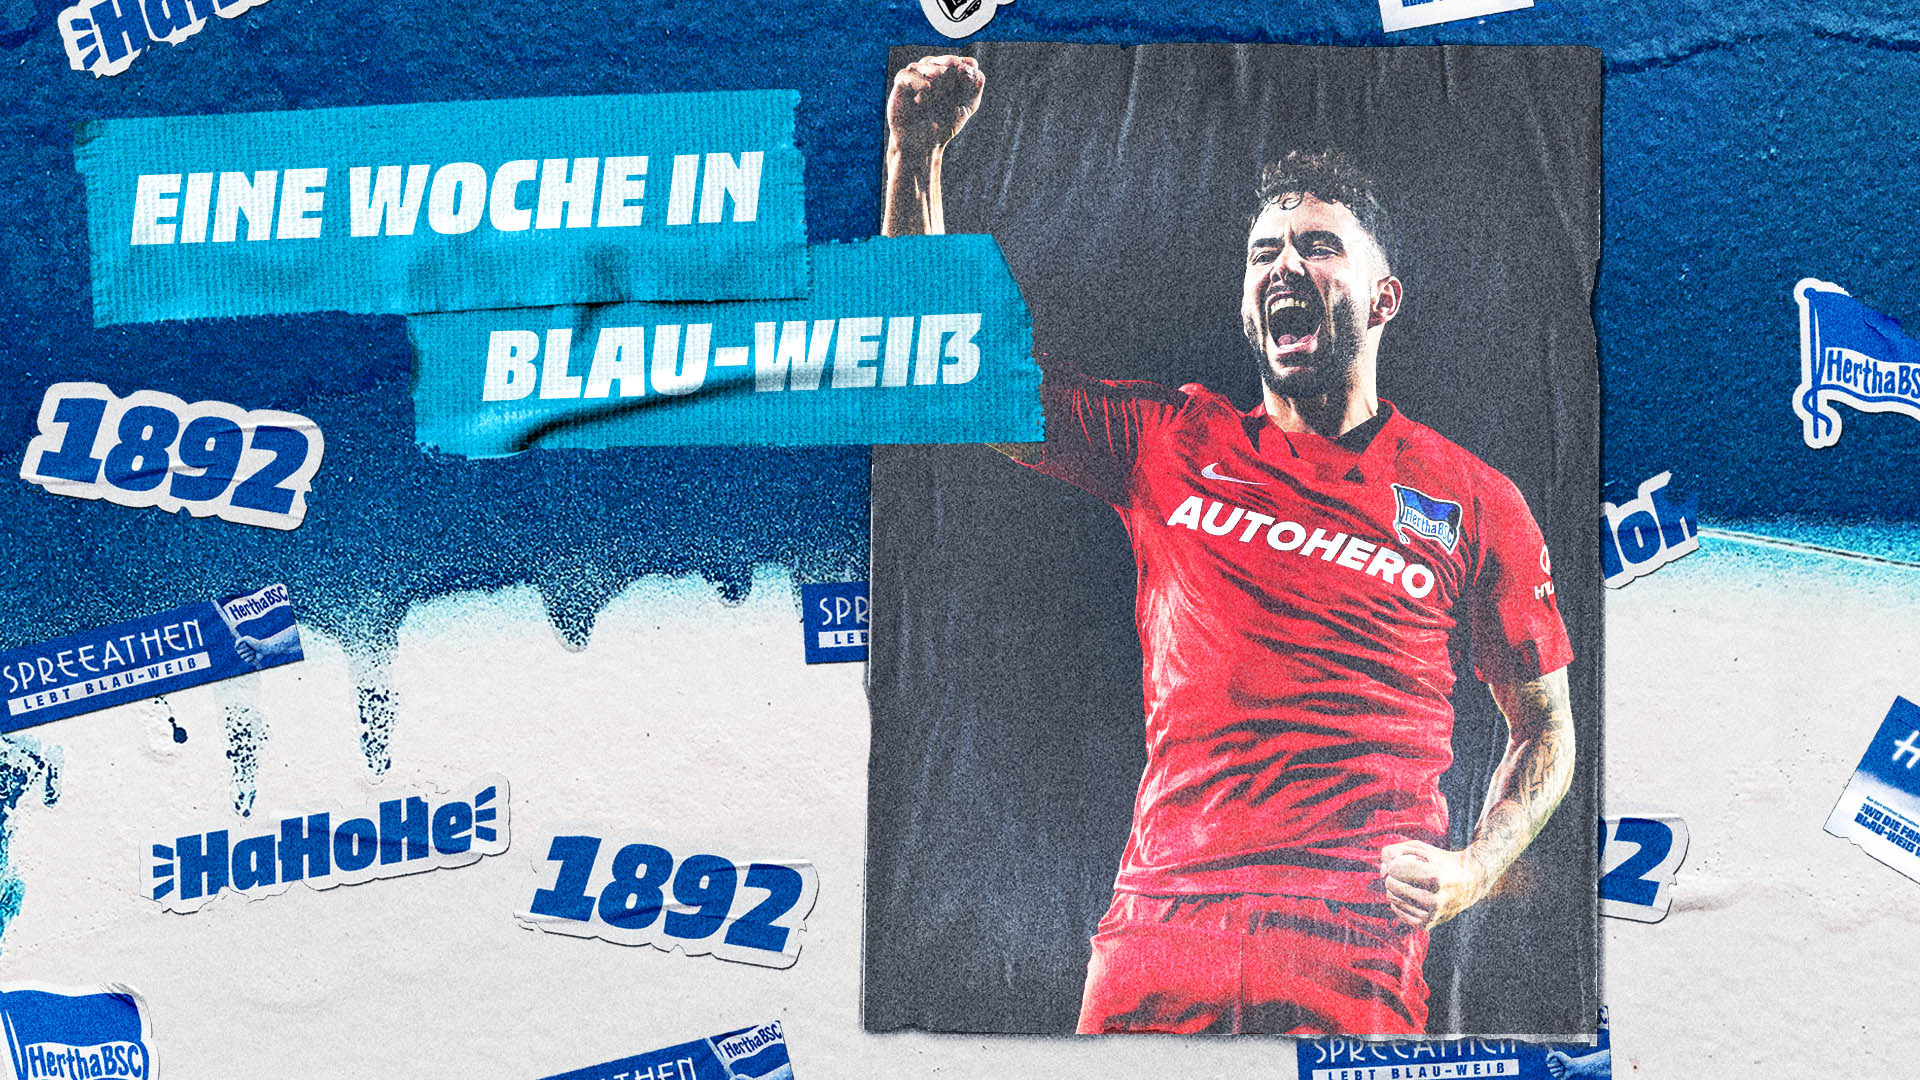 Das Thumbnail zur Woche in Blau-Weiß vor dem Auswärtsspiel in Hoffenheim.